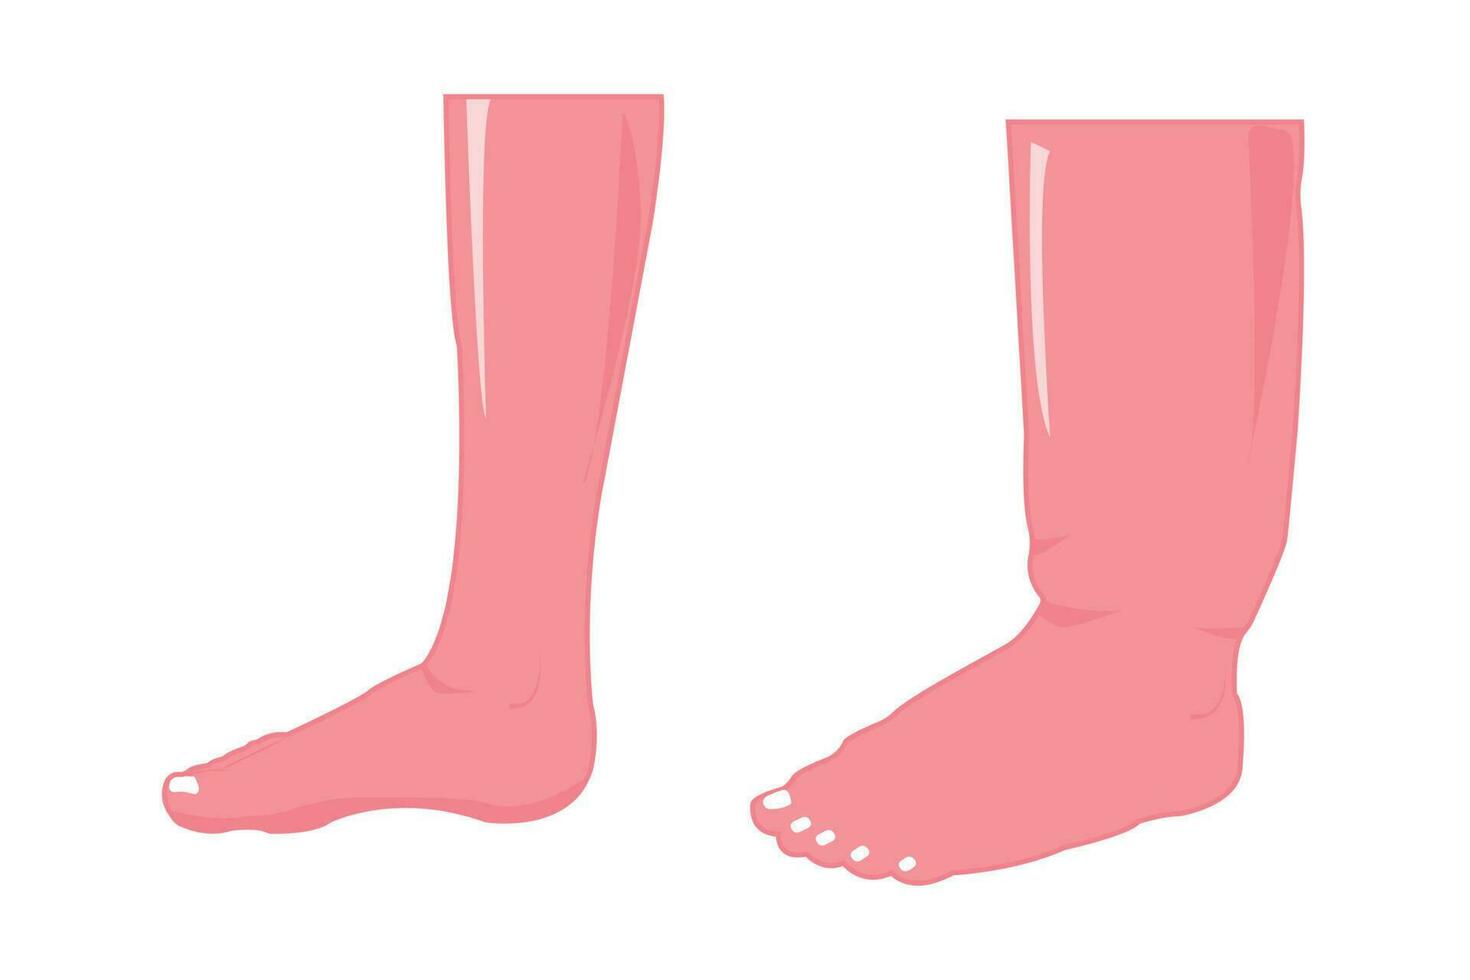 normaal en abnormaal voet. oedeem voet illustratie voor onderwijs. eps 10 vector